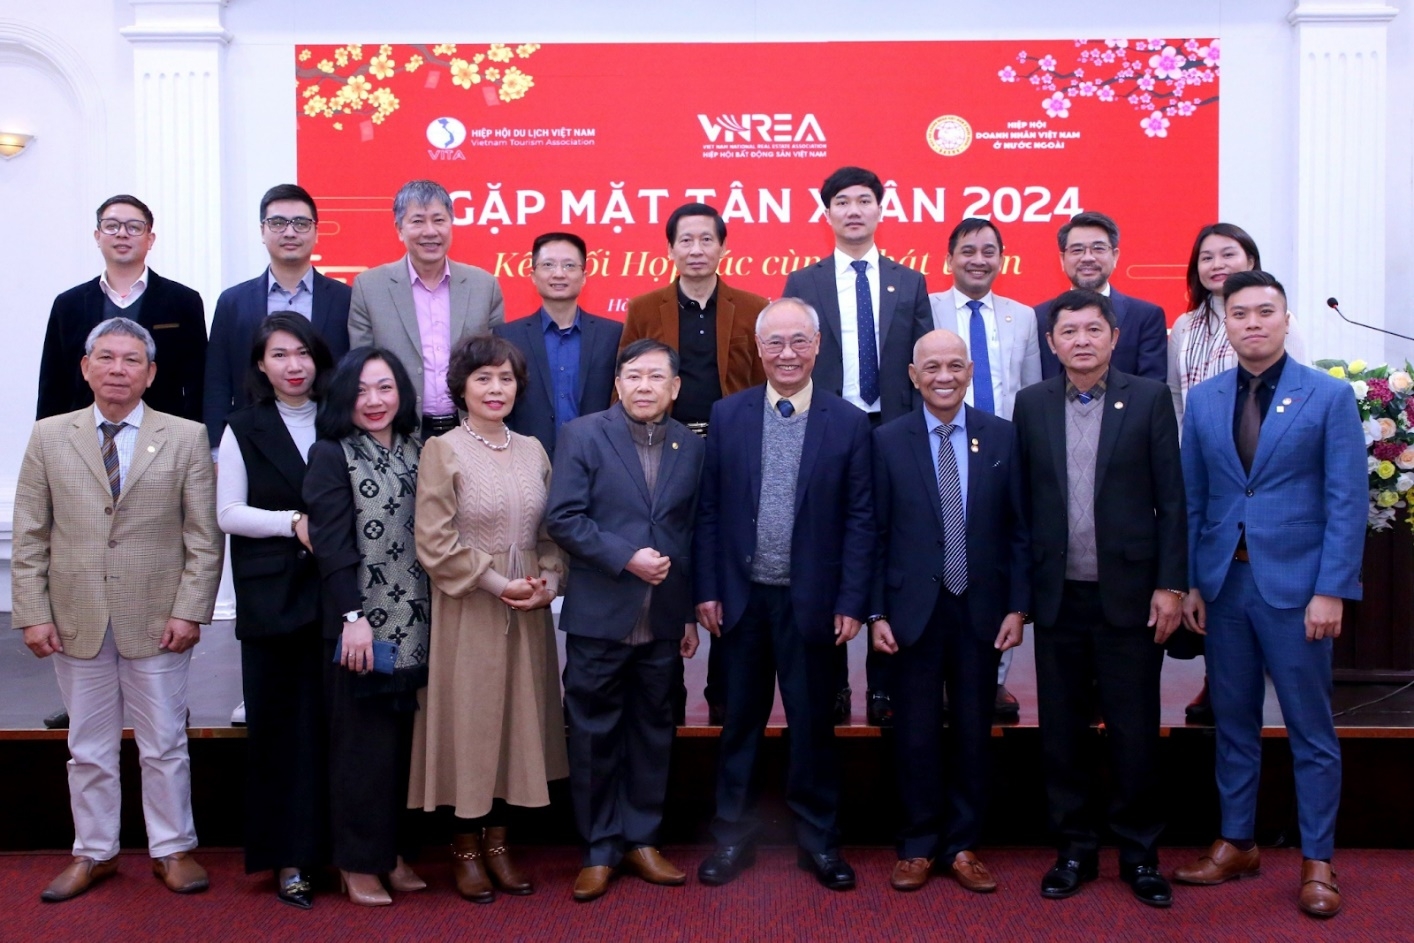 Gặp mặt tân Xuân 2024: Kết nối hợp tác cùng phát triển giữa VNREA – VITA – BAOOV